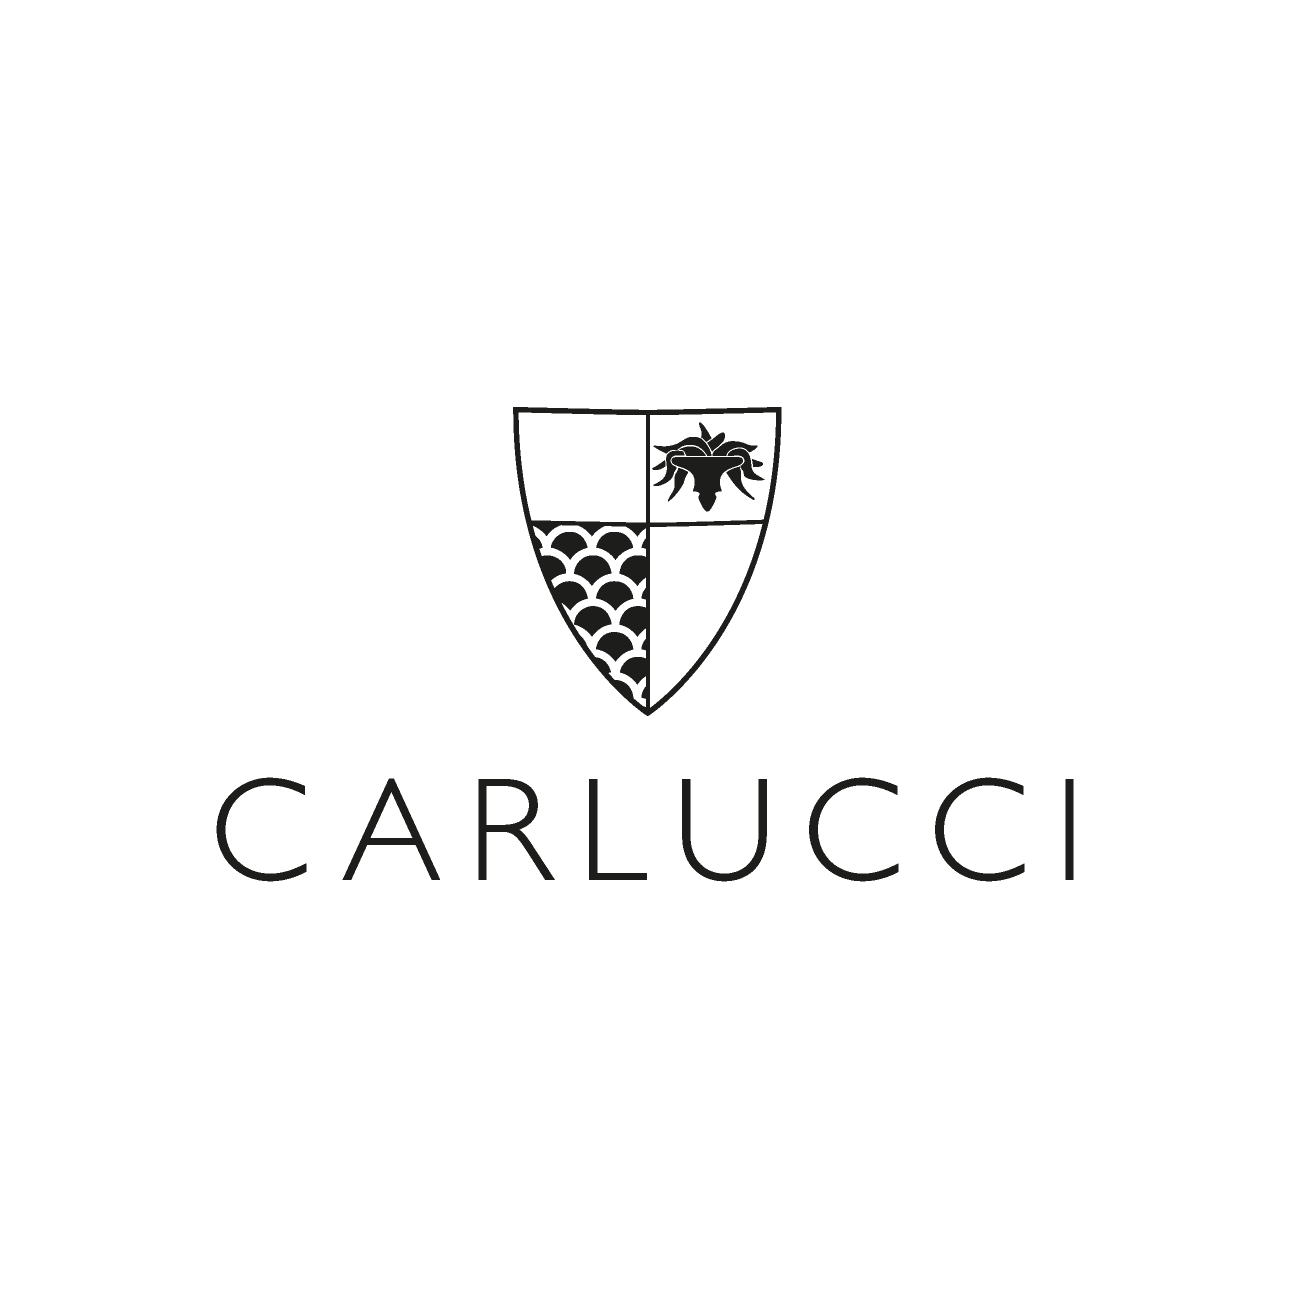 Carluccci